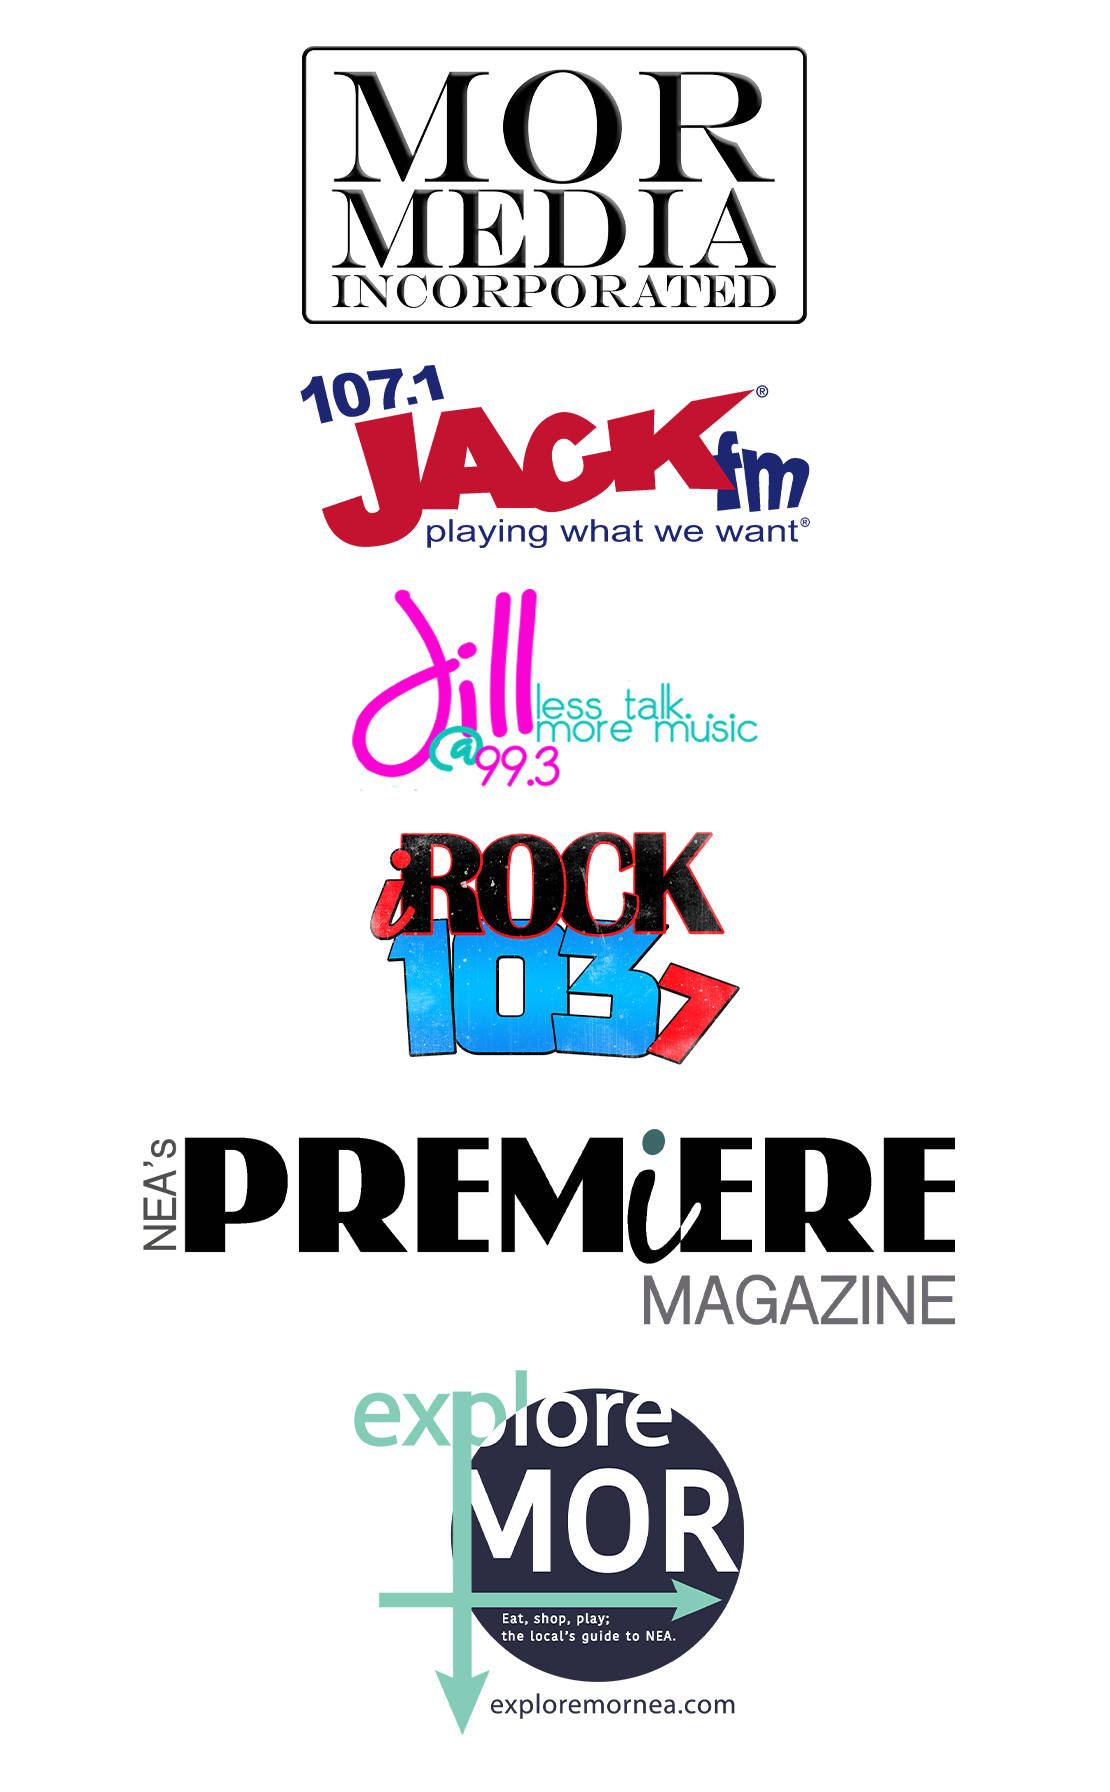 MOR Media logos